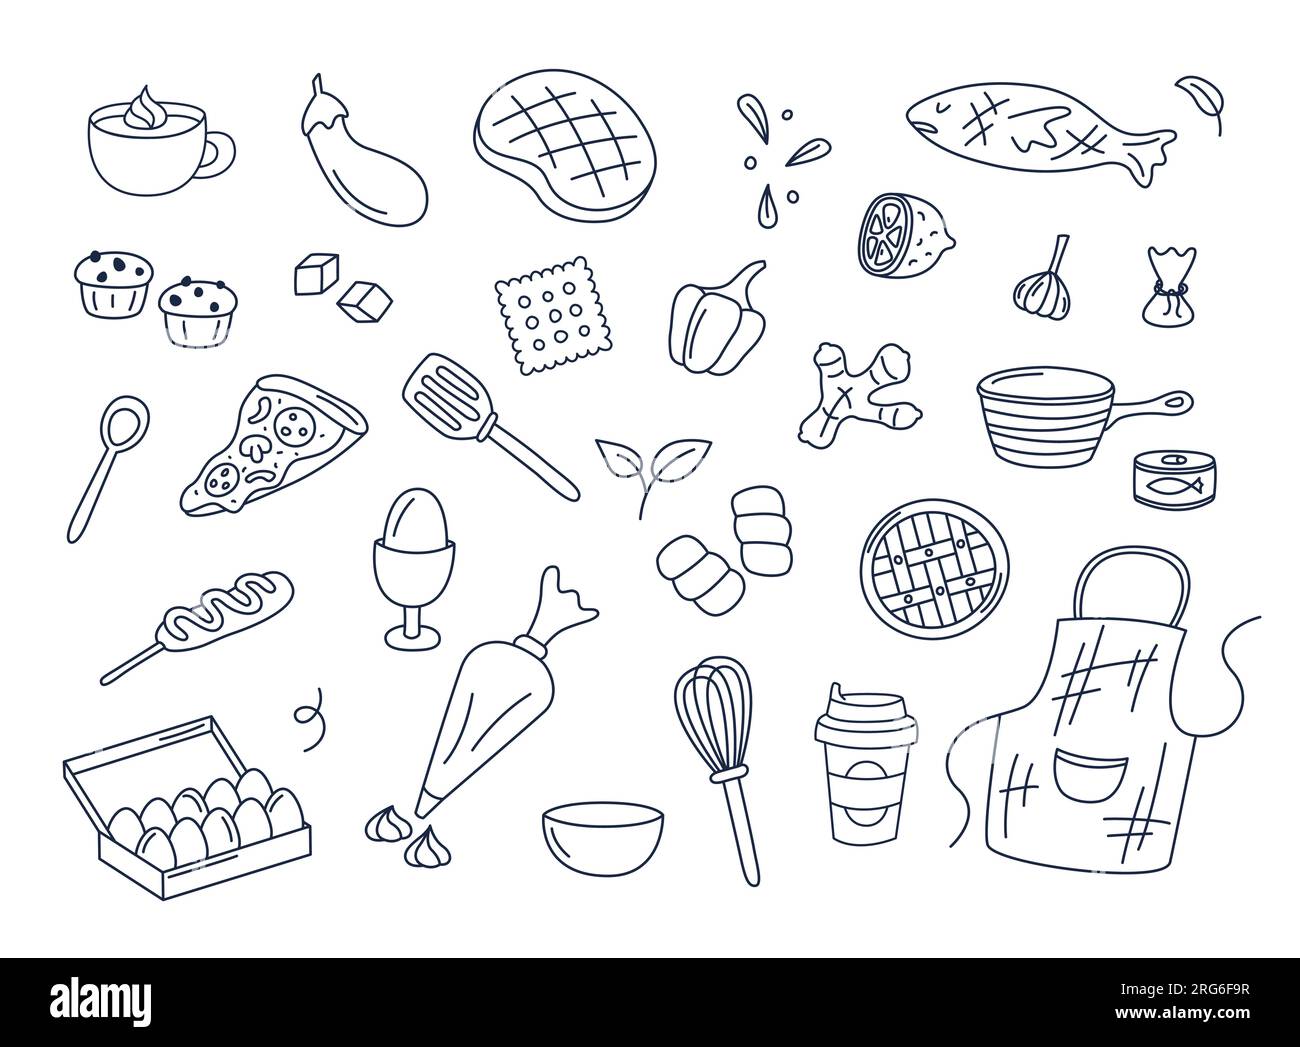 Kochen von Kritzeleien Vektorsatz isolierter Elemente. Niedliche Doodle Illustrations Sammlung von Utensilien, Küchenutensilien, Essen, Essenszutaten, Küchengegenständen Stock Vektor